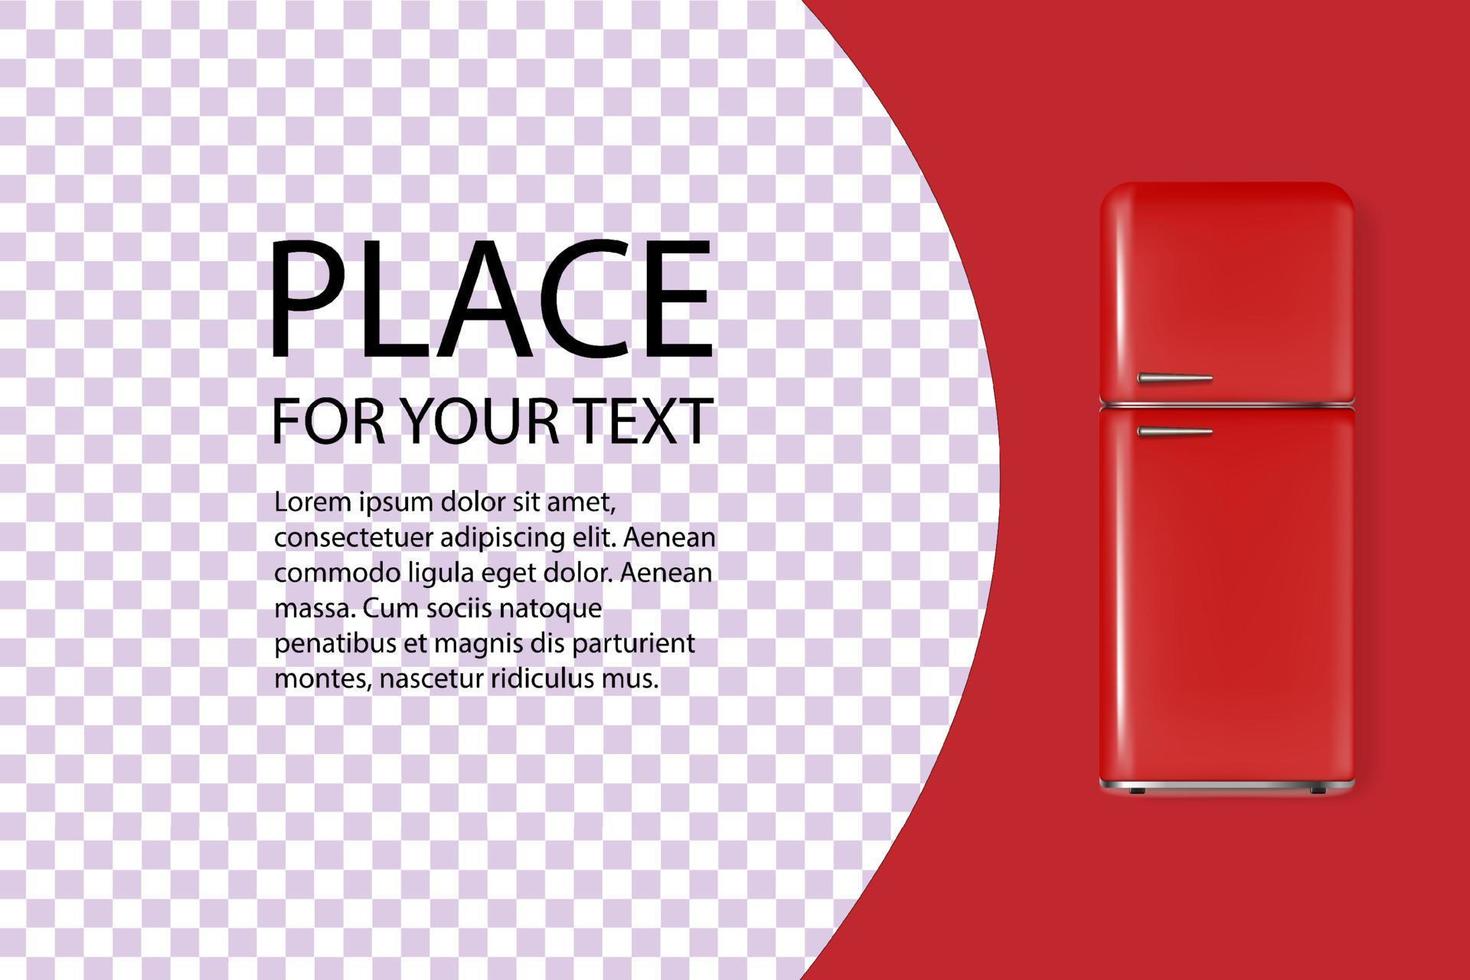 banner de refrigerador vintage 3d detallado y realista. cartel publicitario con texto. ilustración vectorial de un refrigerador vector